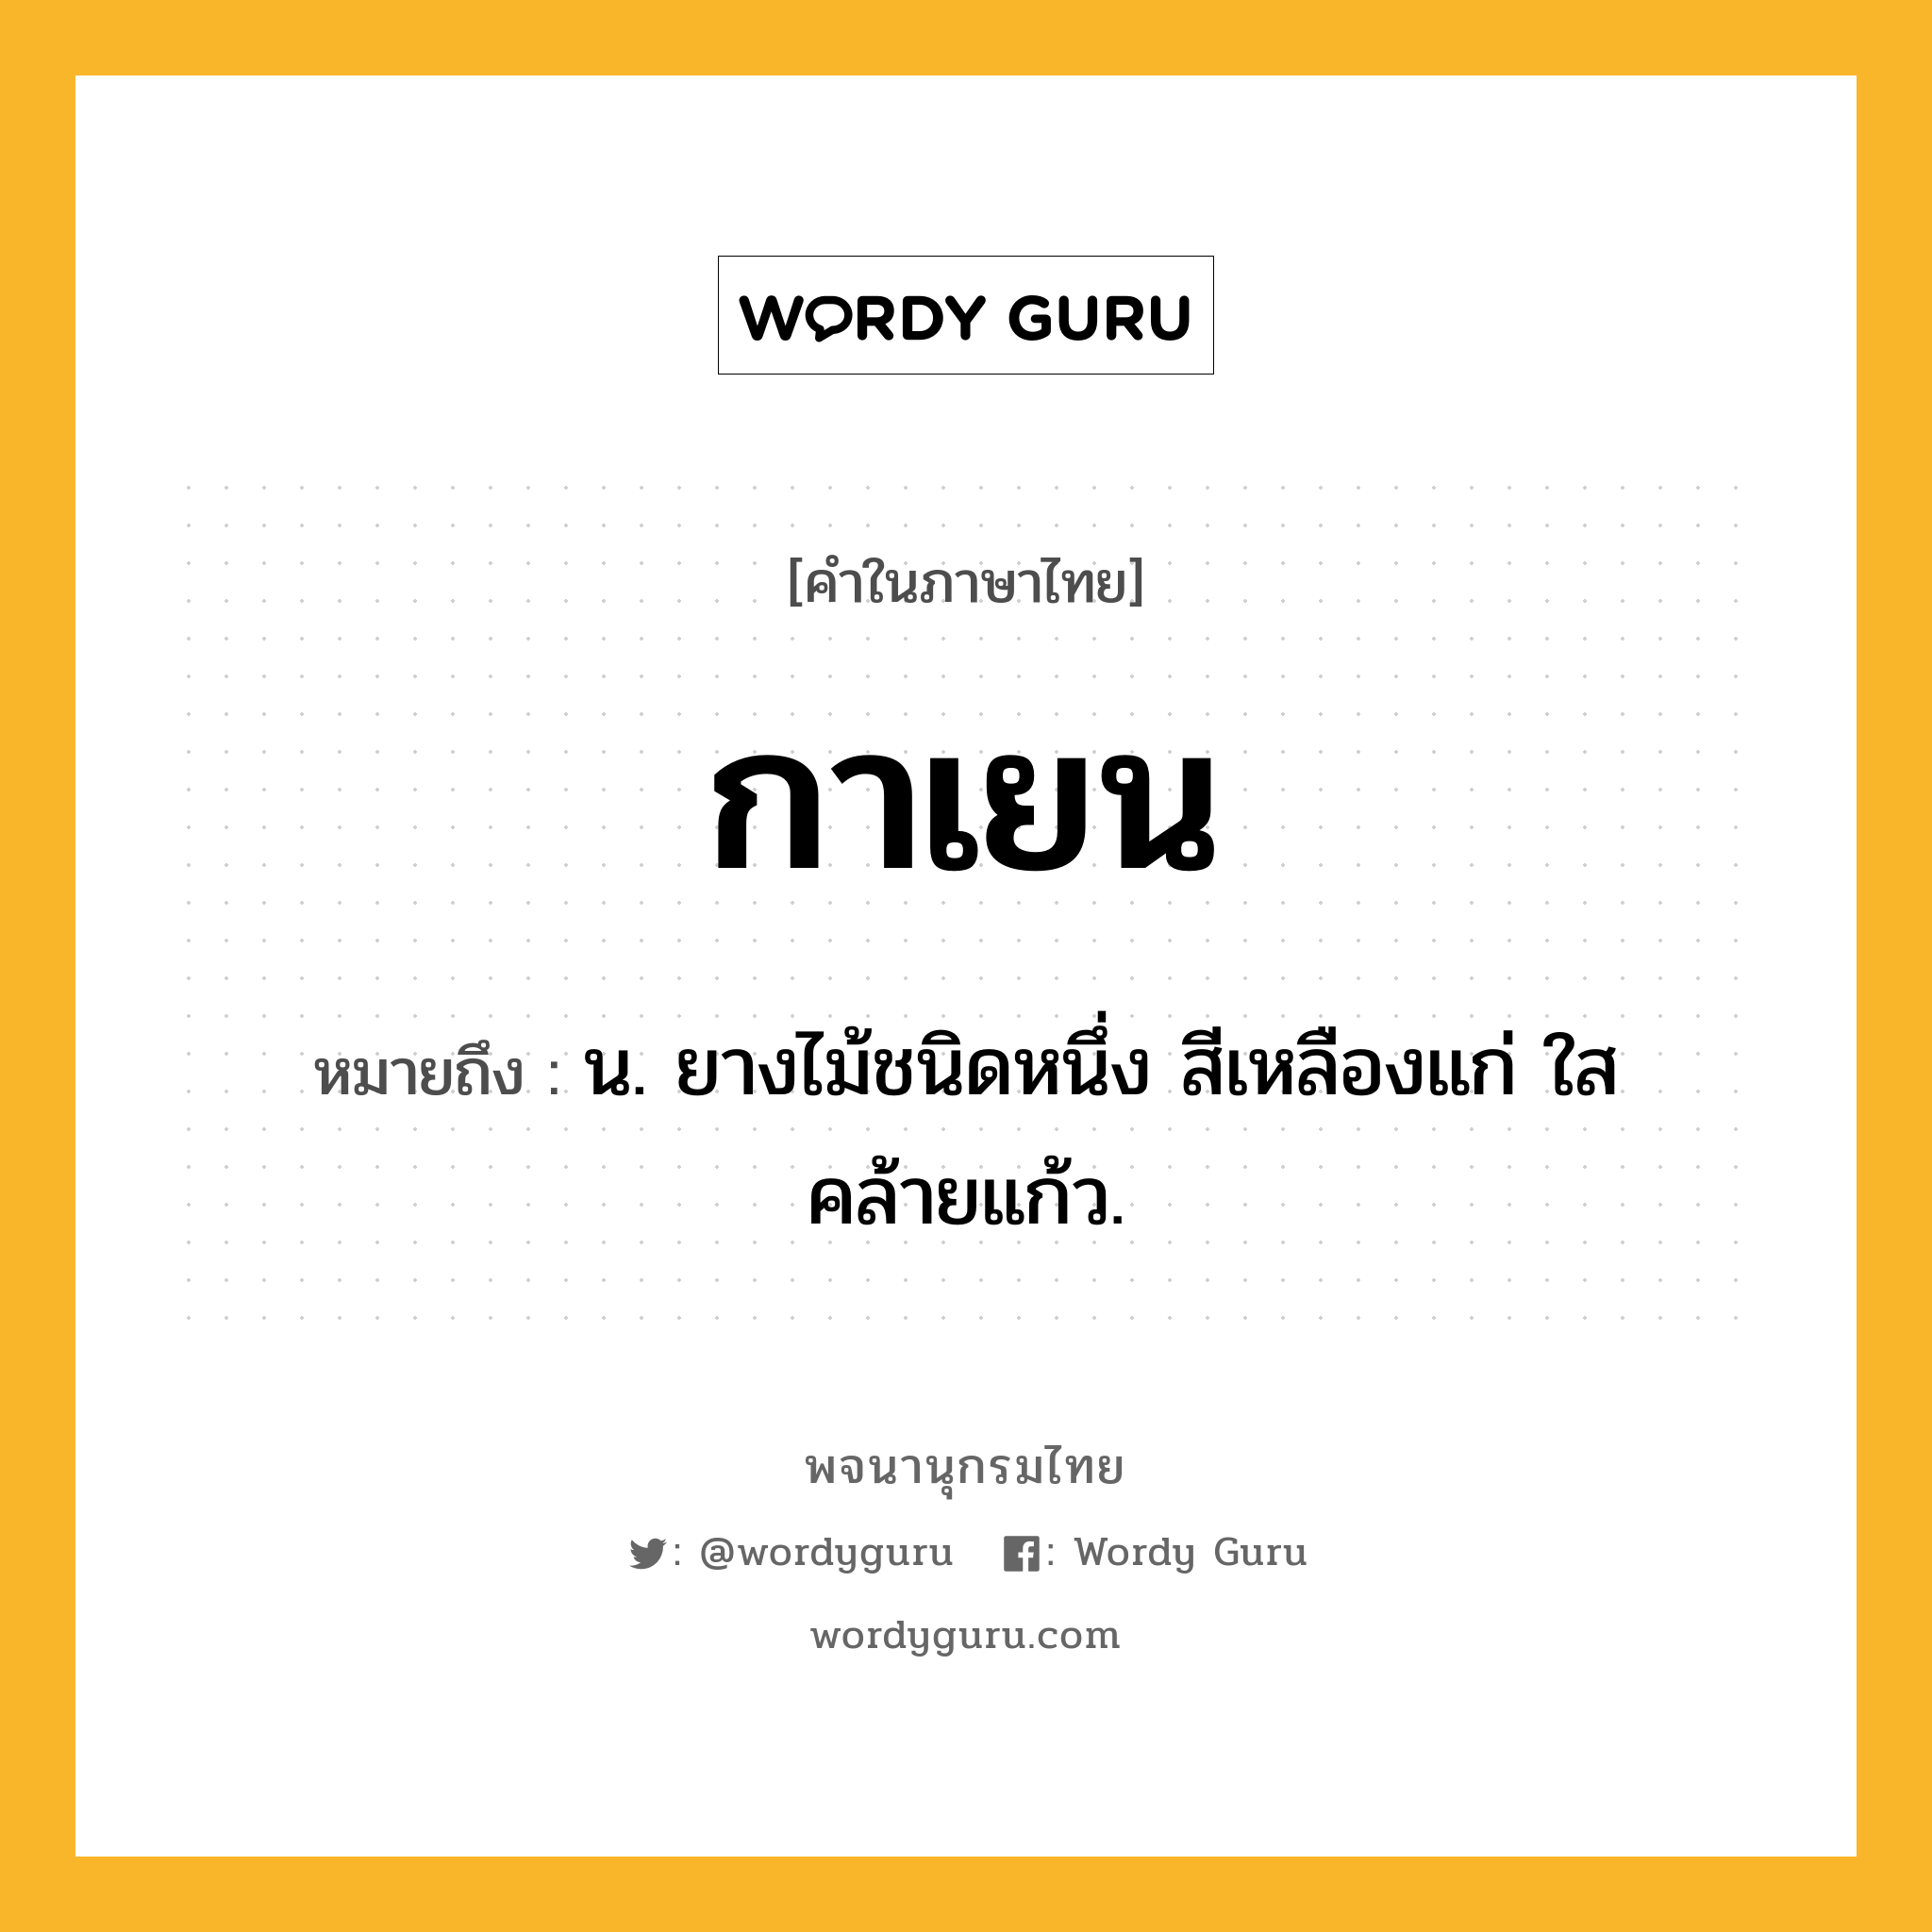 กาเยน หมายถึงอะไร?, คำในภาษาไทย กาเยน หมายถึง น. ยางไม้ชนิดหนึ่ง สีเหลืองแก่ ใสคล้ายแก้ว.